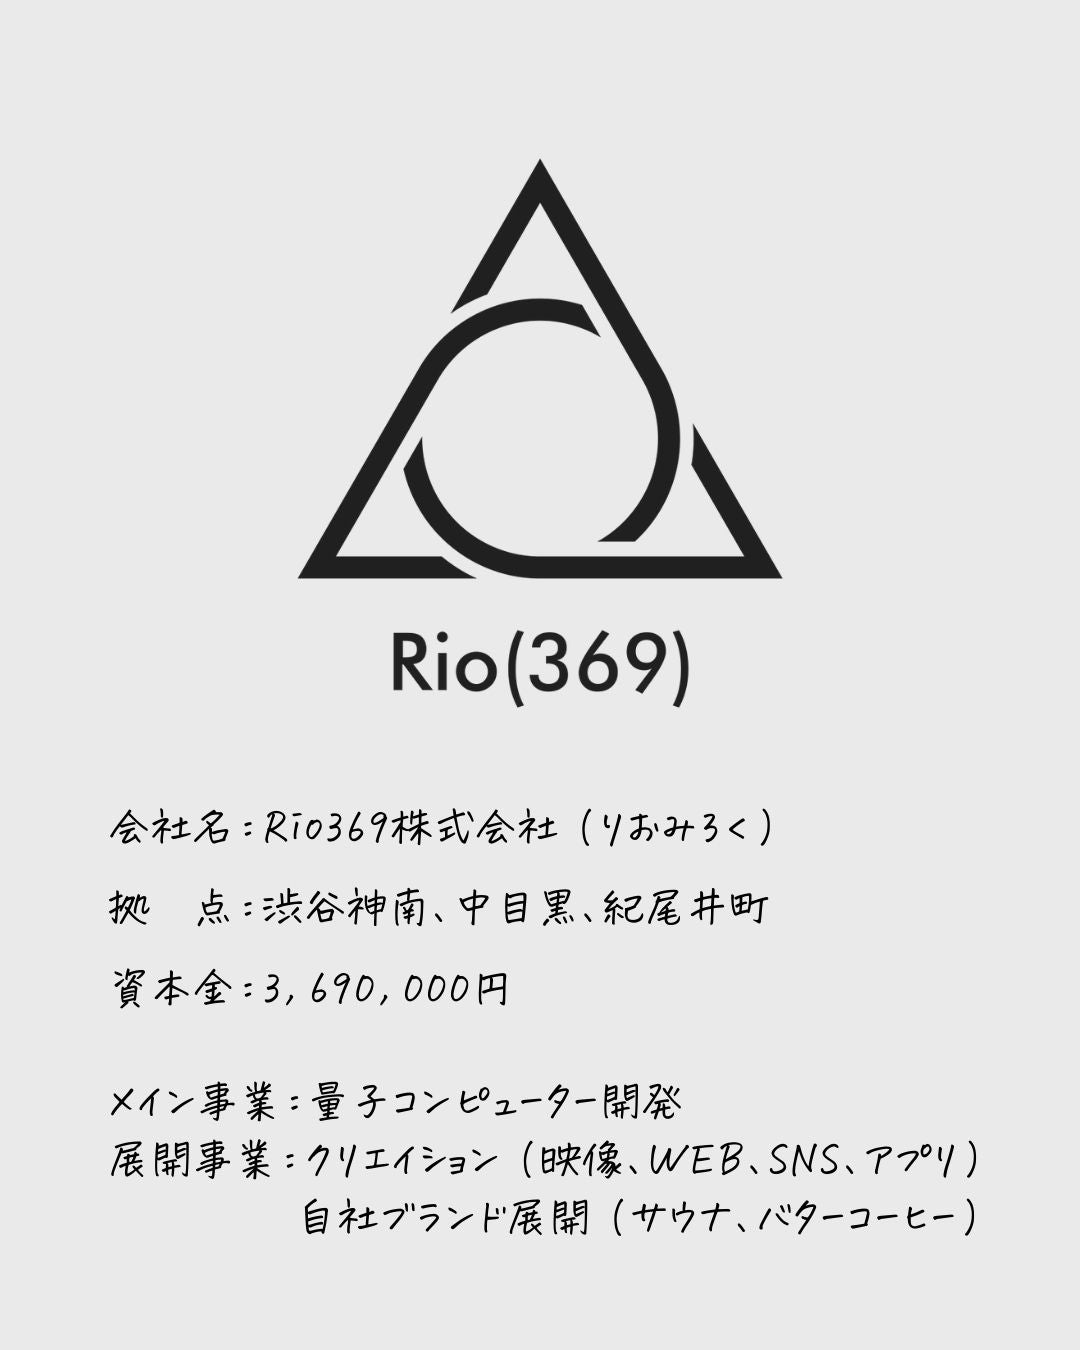 Rio369株式会社とは